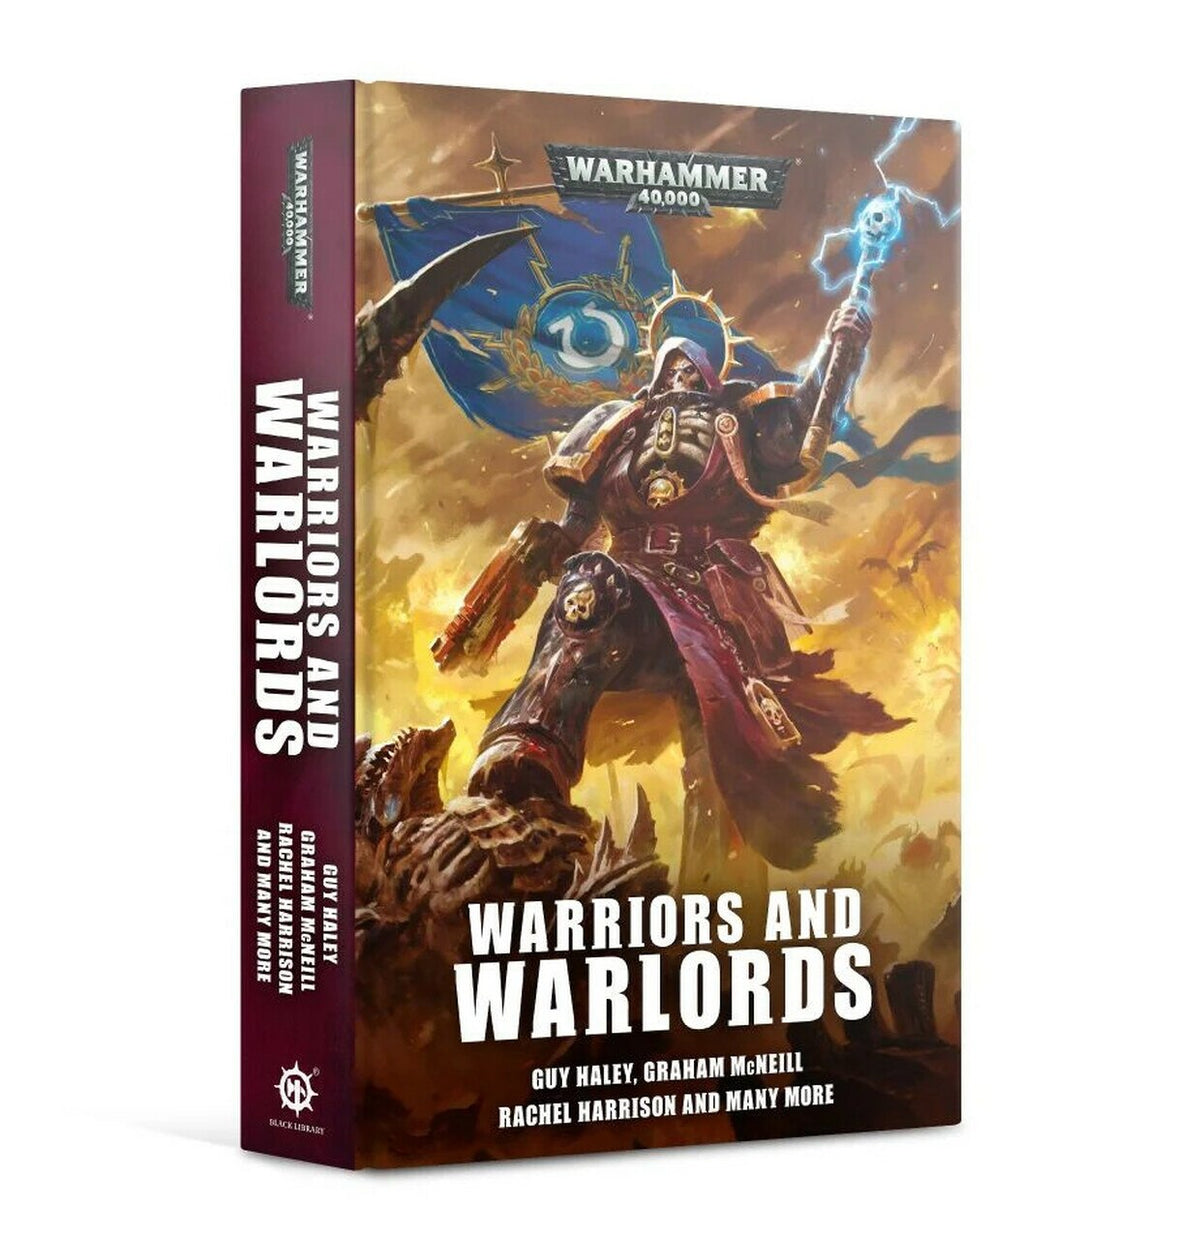 Warriors and Warlords (Novel PB)